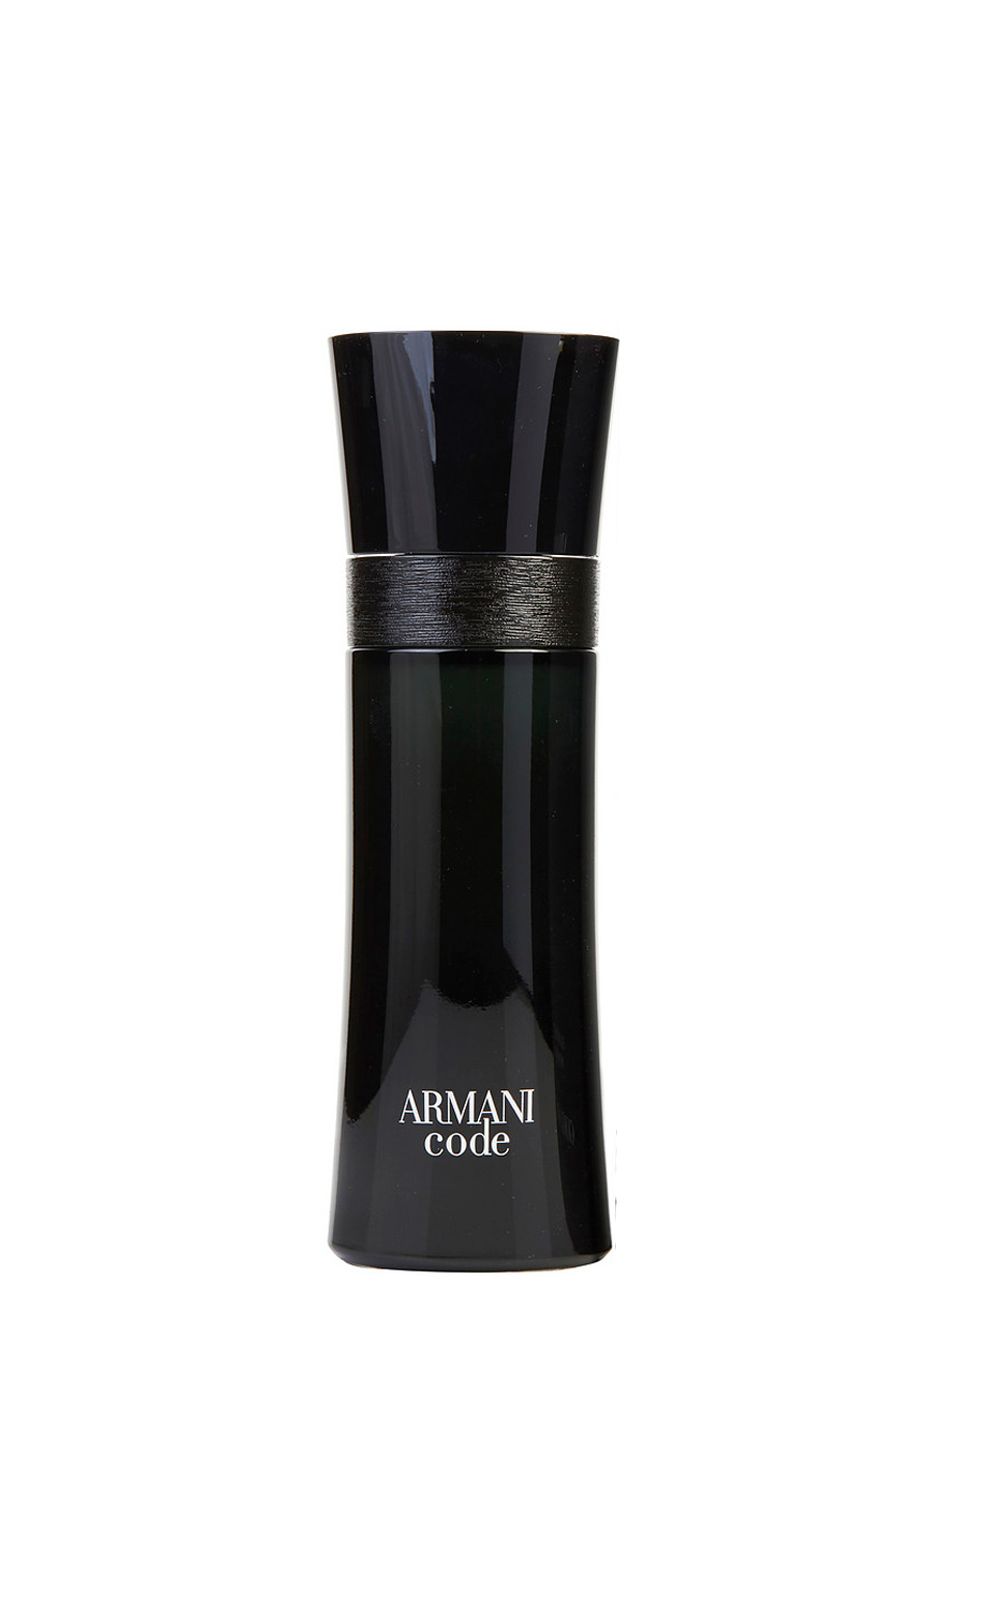 Foto 1 - Armani Code Giorgio Armani - Perfume Masculino - Eau de Toilette - 50ml